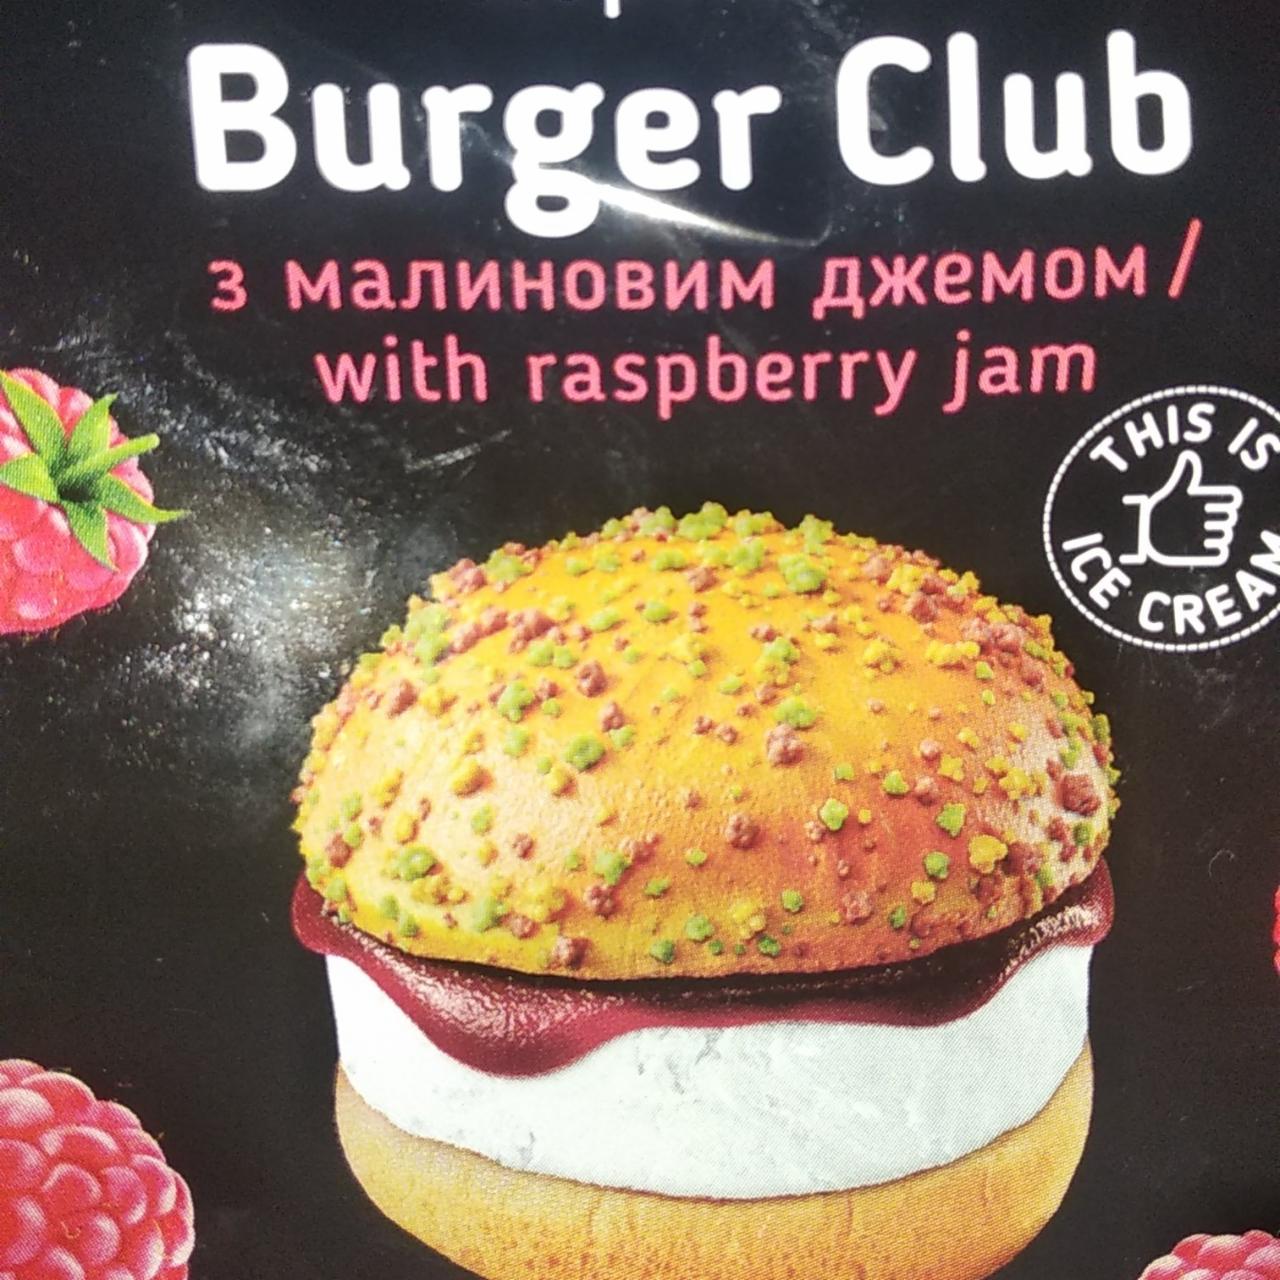 Фото - Морозиво з малиновим джемом Burger Club Rud